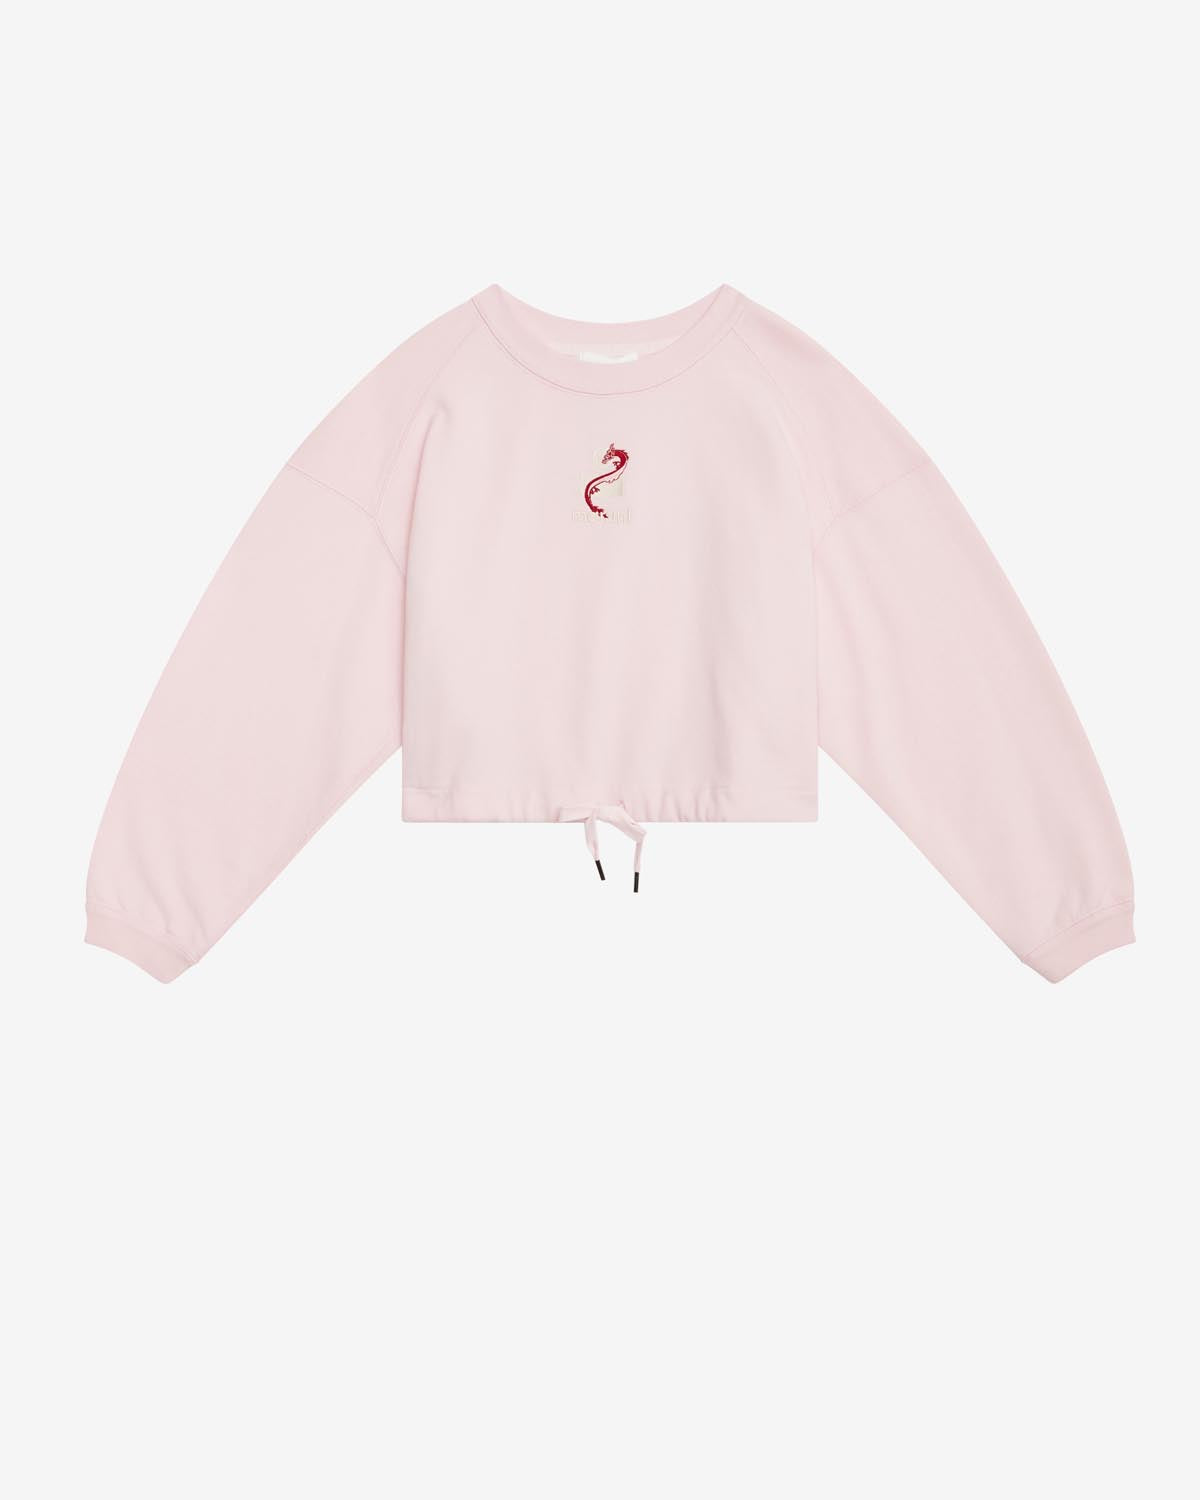 Margyo スウェットシャツ Woman ピンク 1